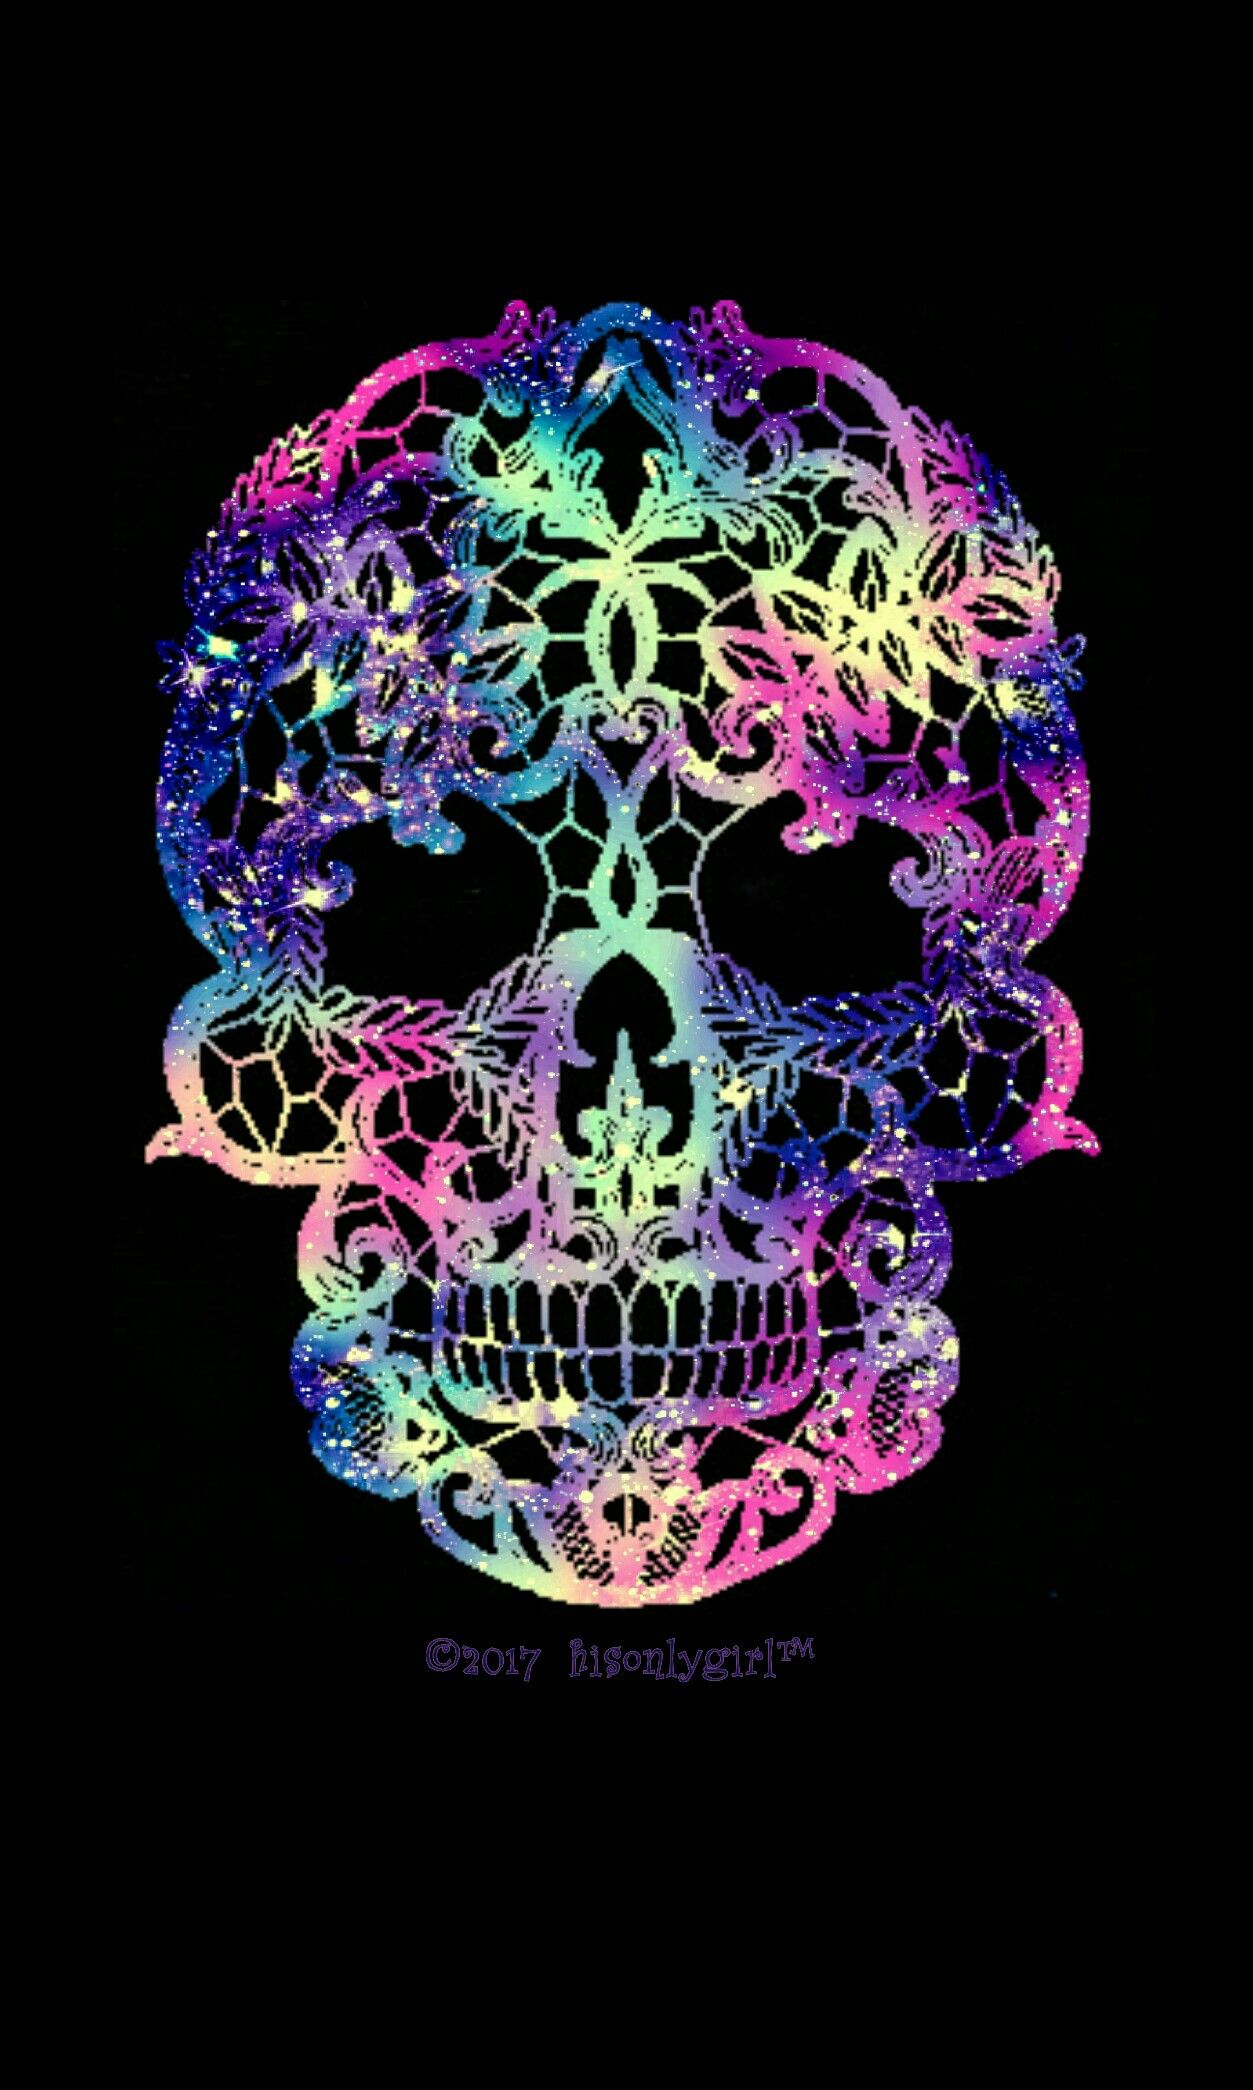 girly skull wallpaper,skull,bone,illustration,graphic design,design